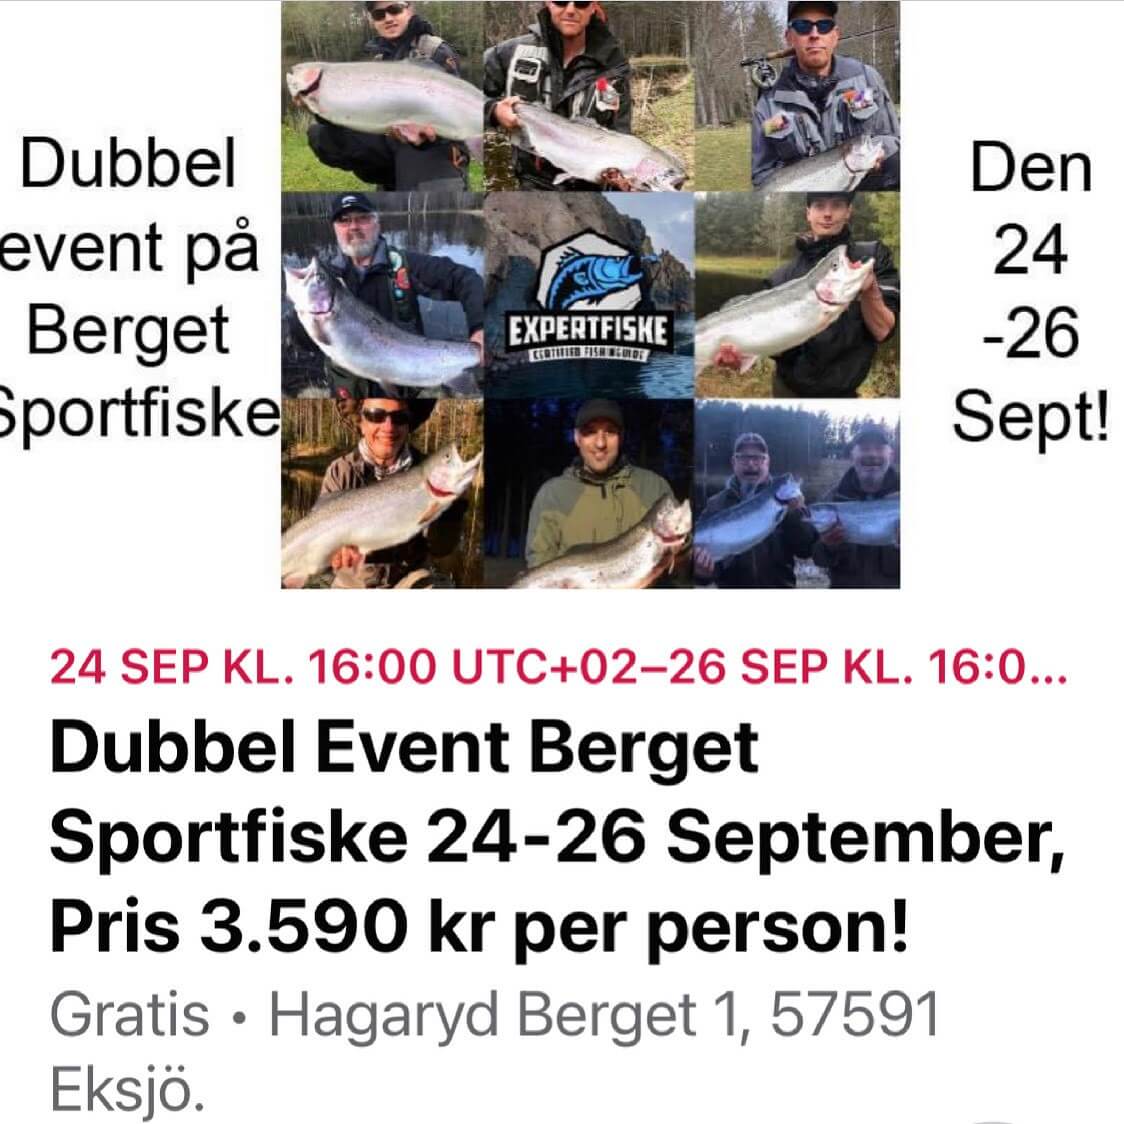 FISKE EVENT PÅ BERGET SPORTFISKE, 24 till den 26 September 2021